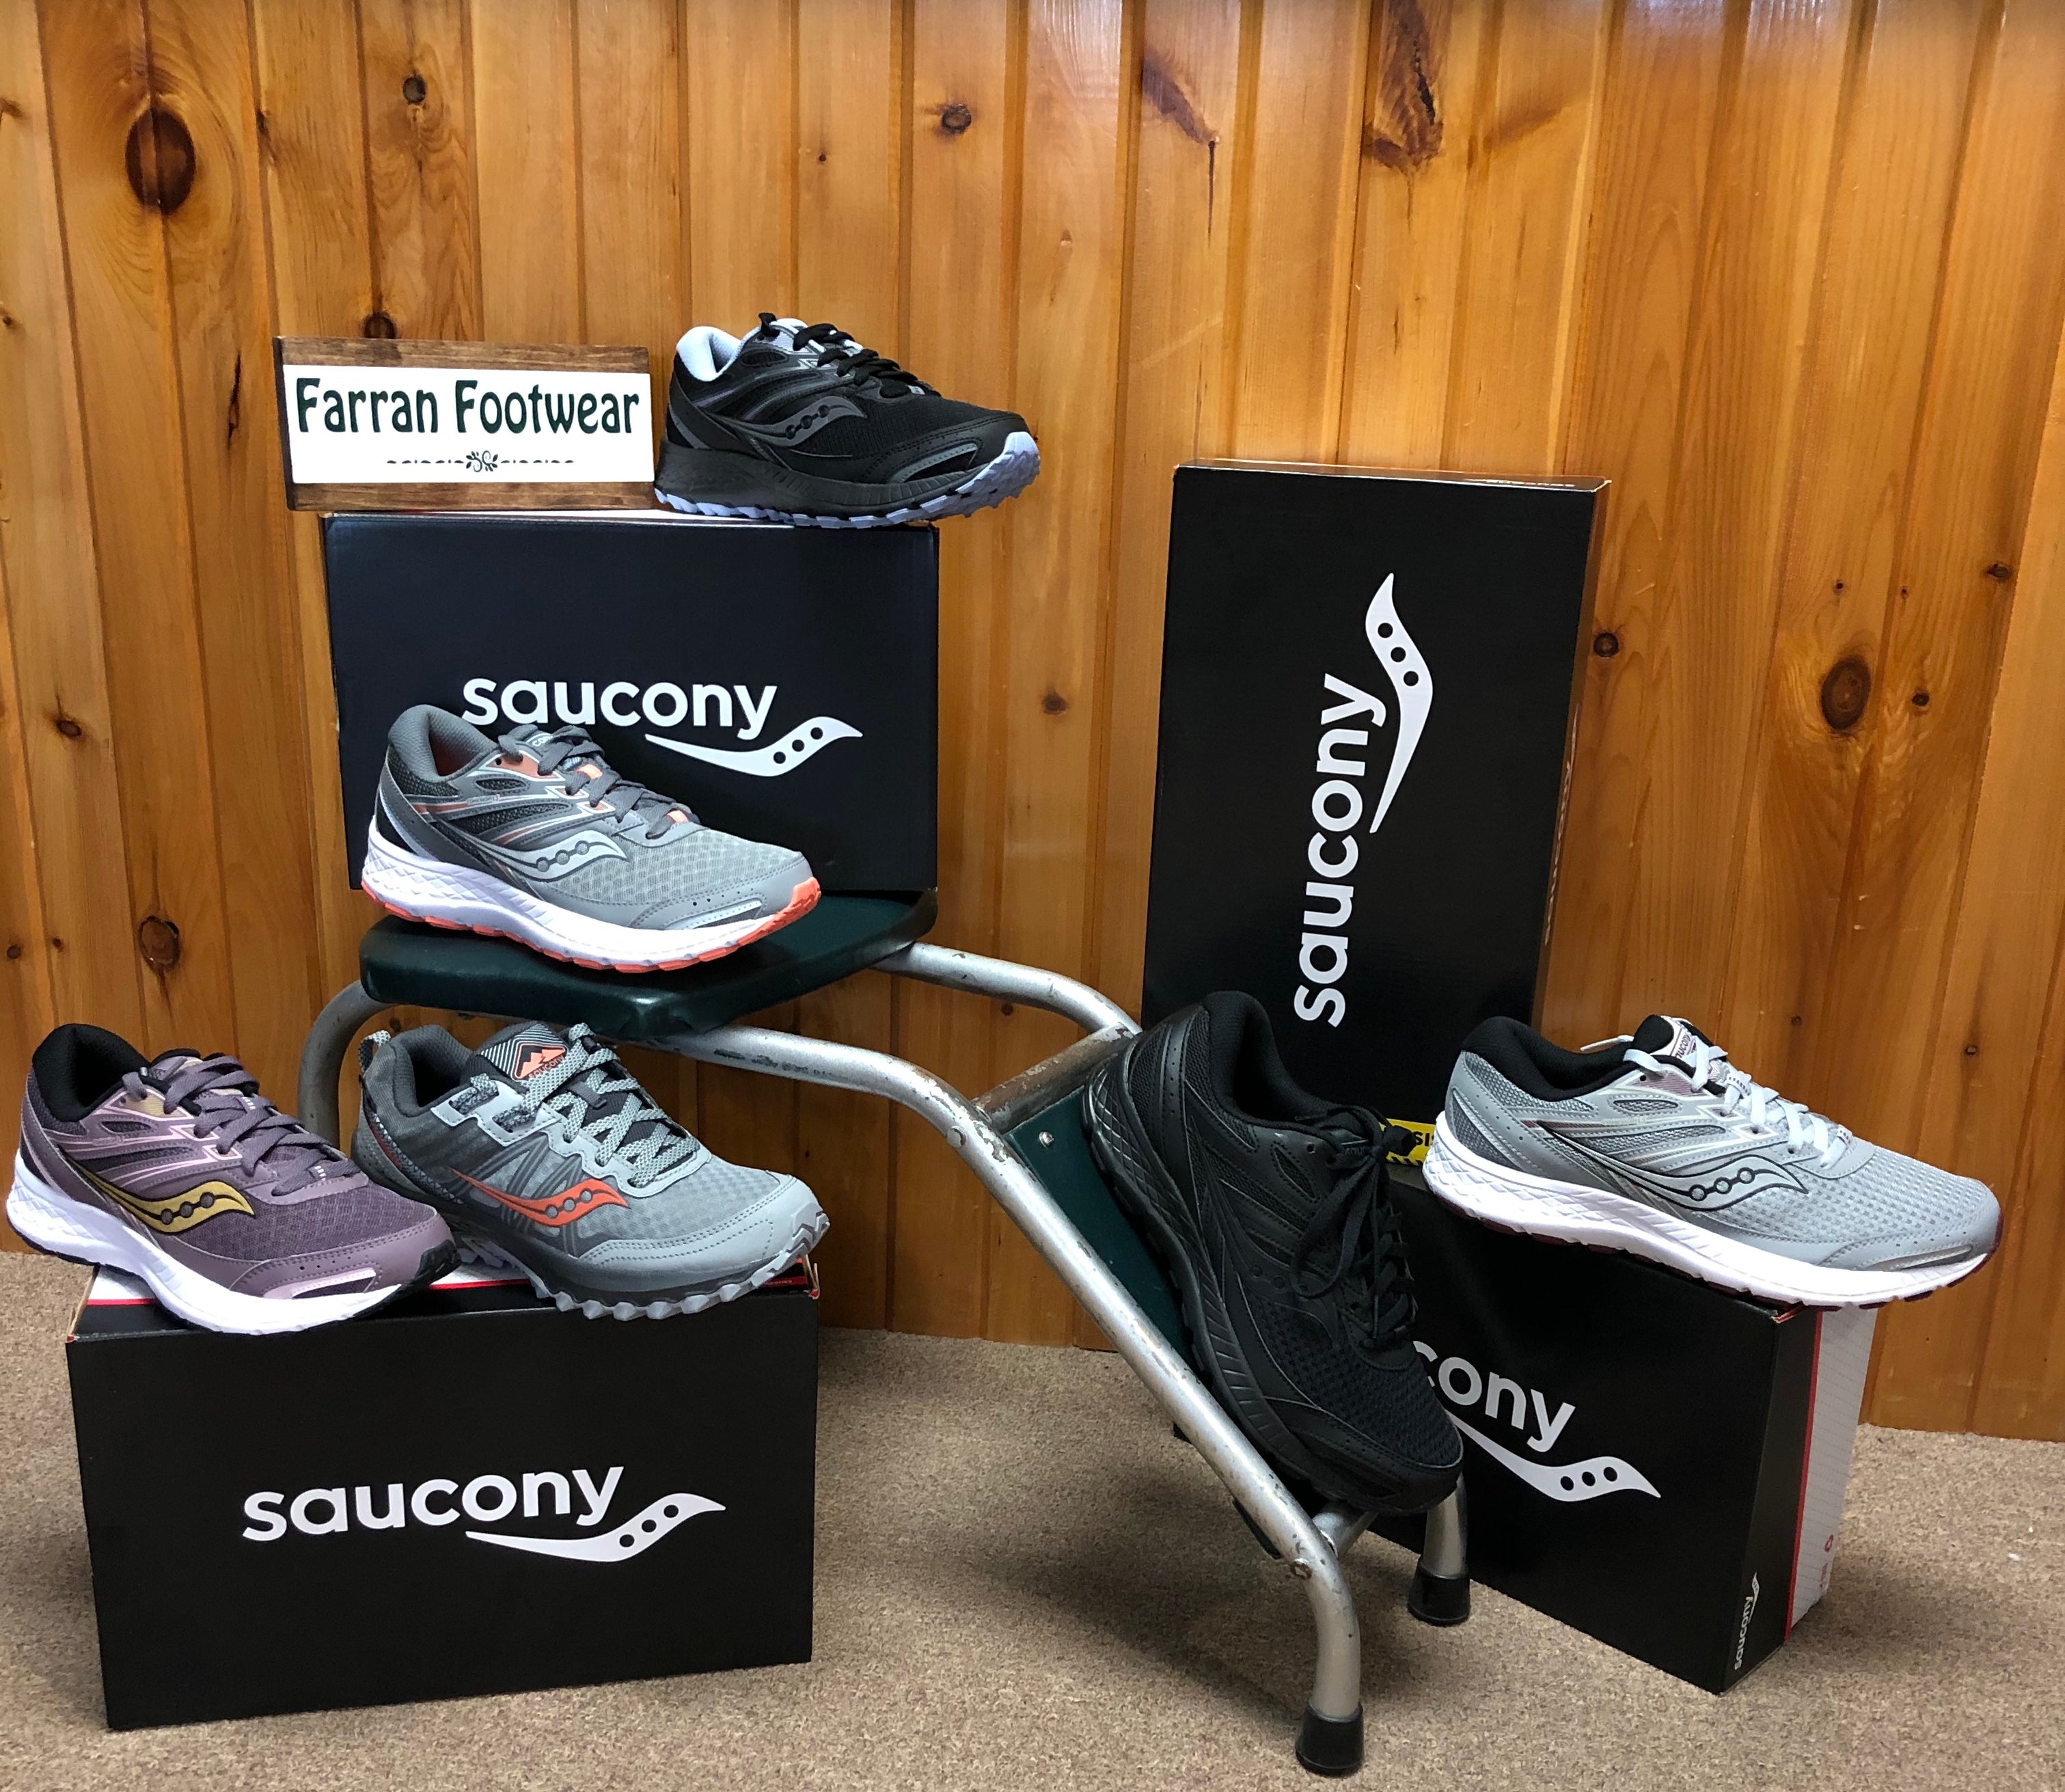 Saucony for Women – Farran Footwear